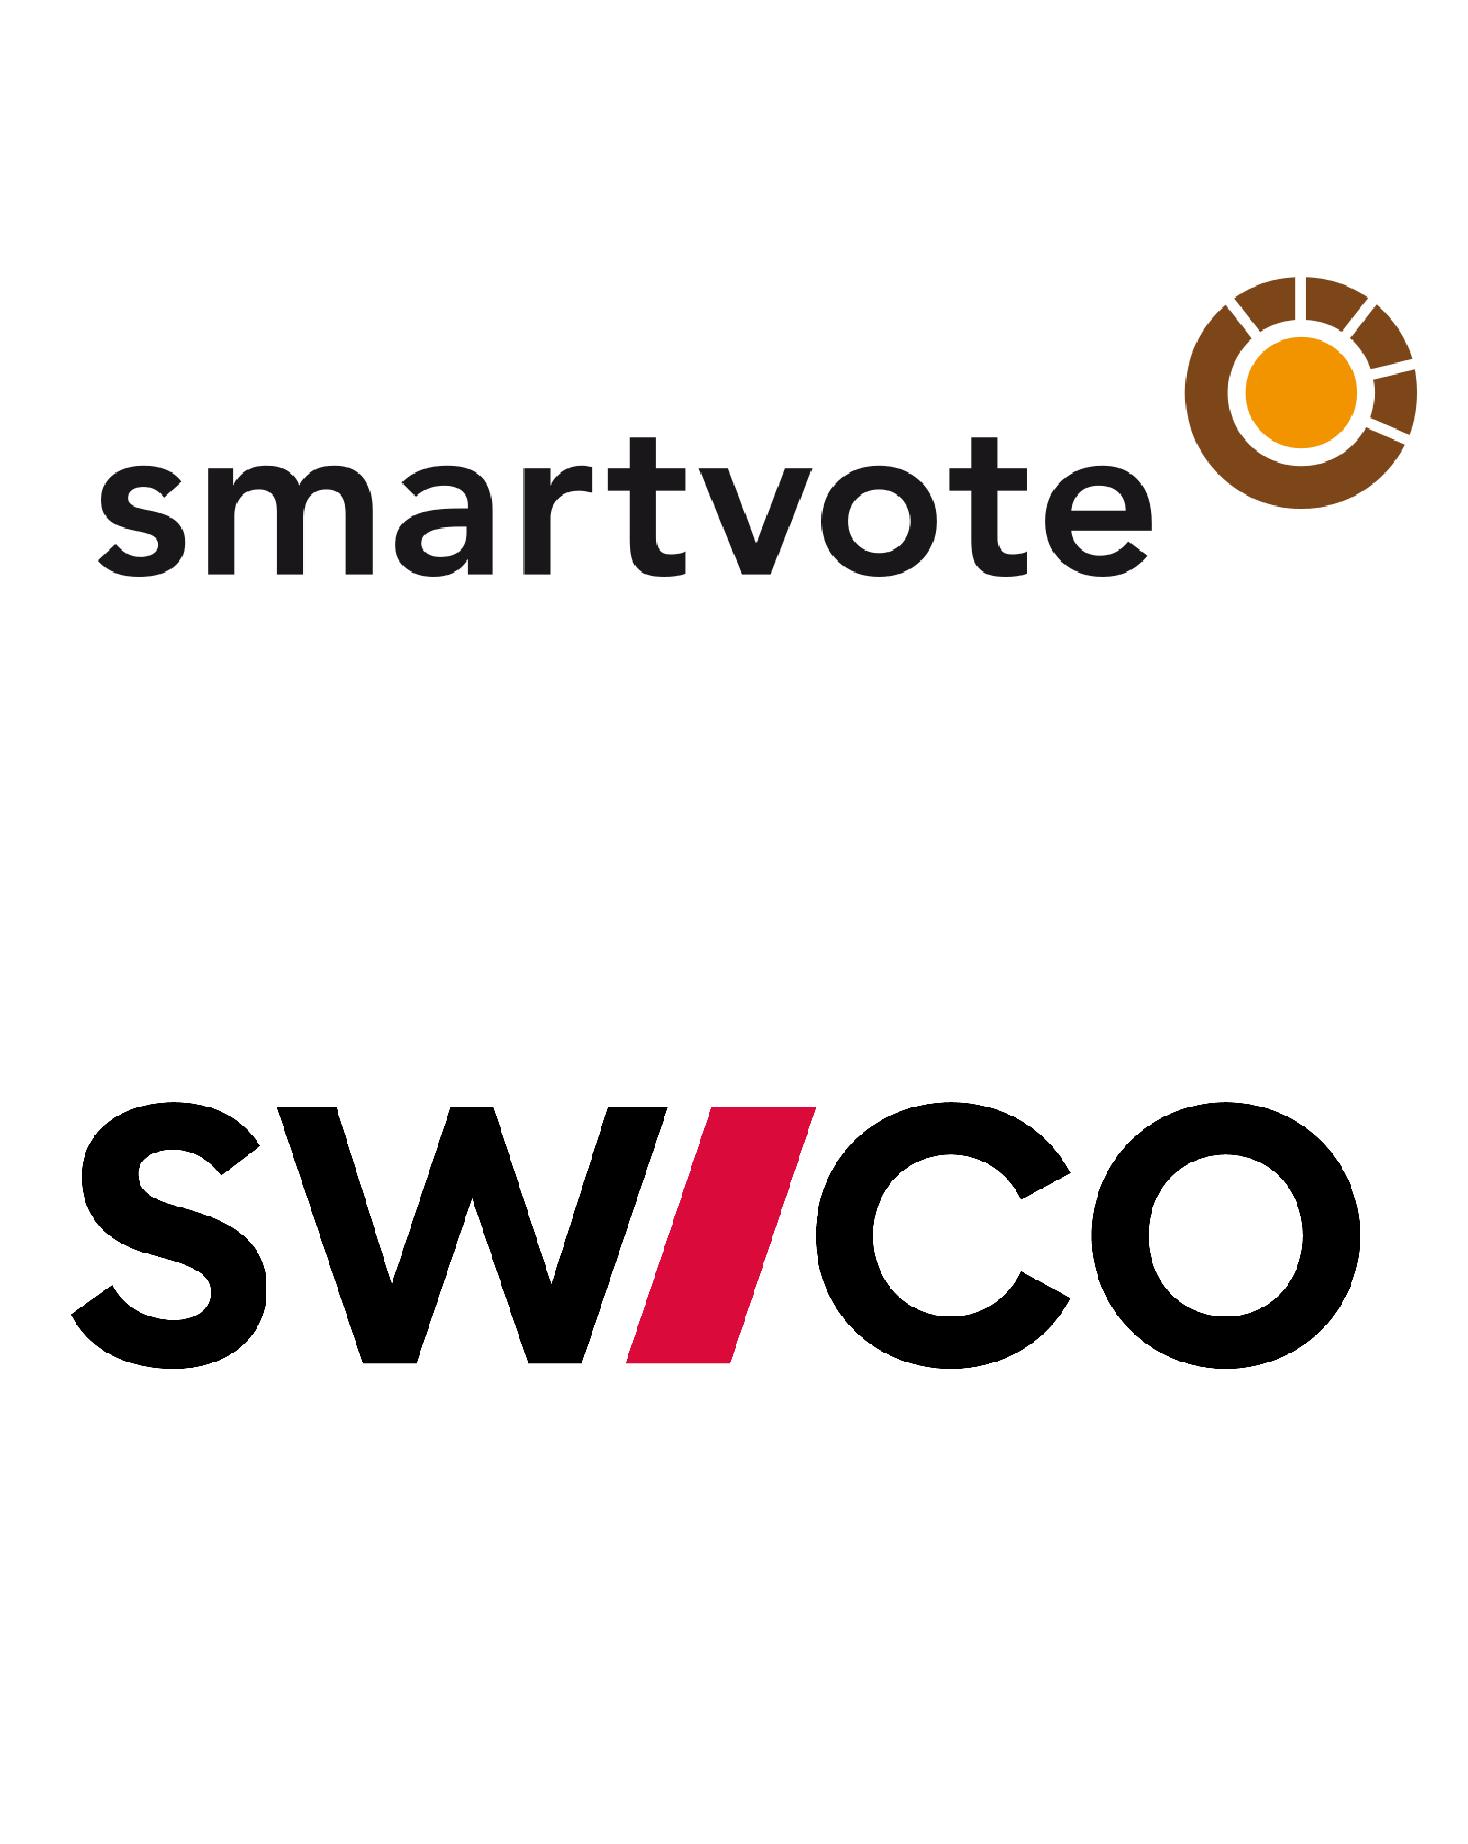 Swico macht den Digitalisierungs-Check für Parlamentskandidaten